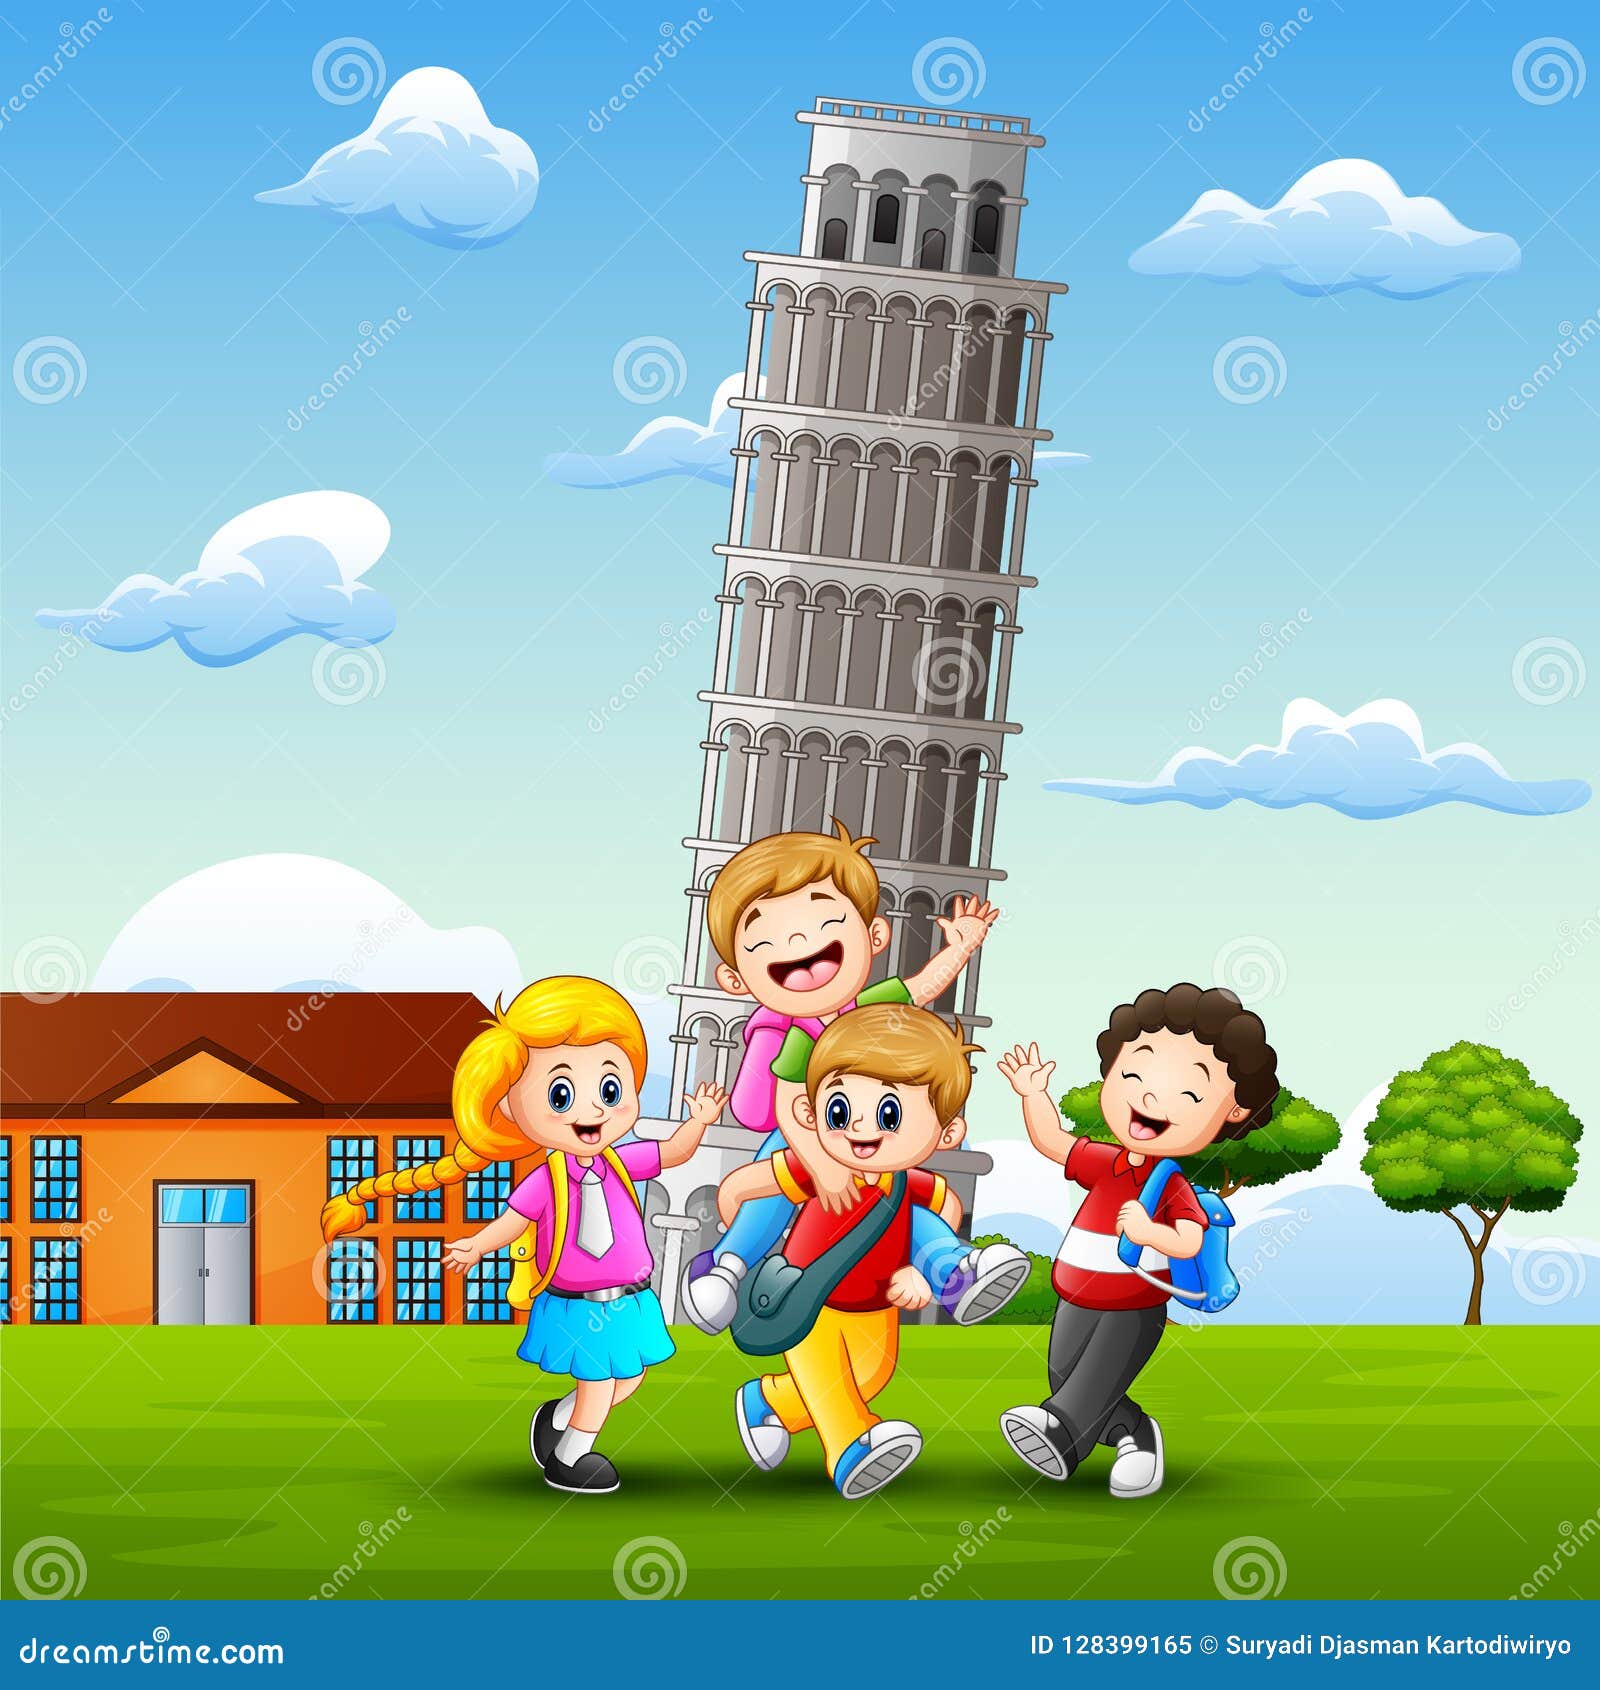 Cartoon Happy Kids in Front of Pisa Tower Background Stock Vector ...